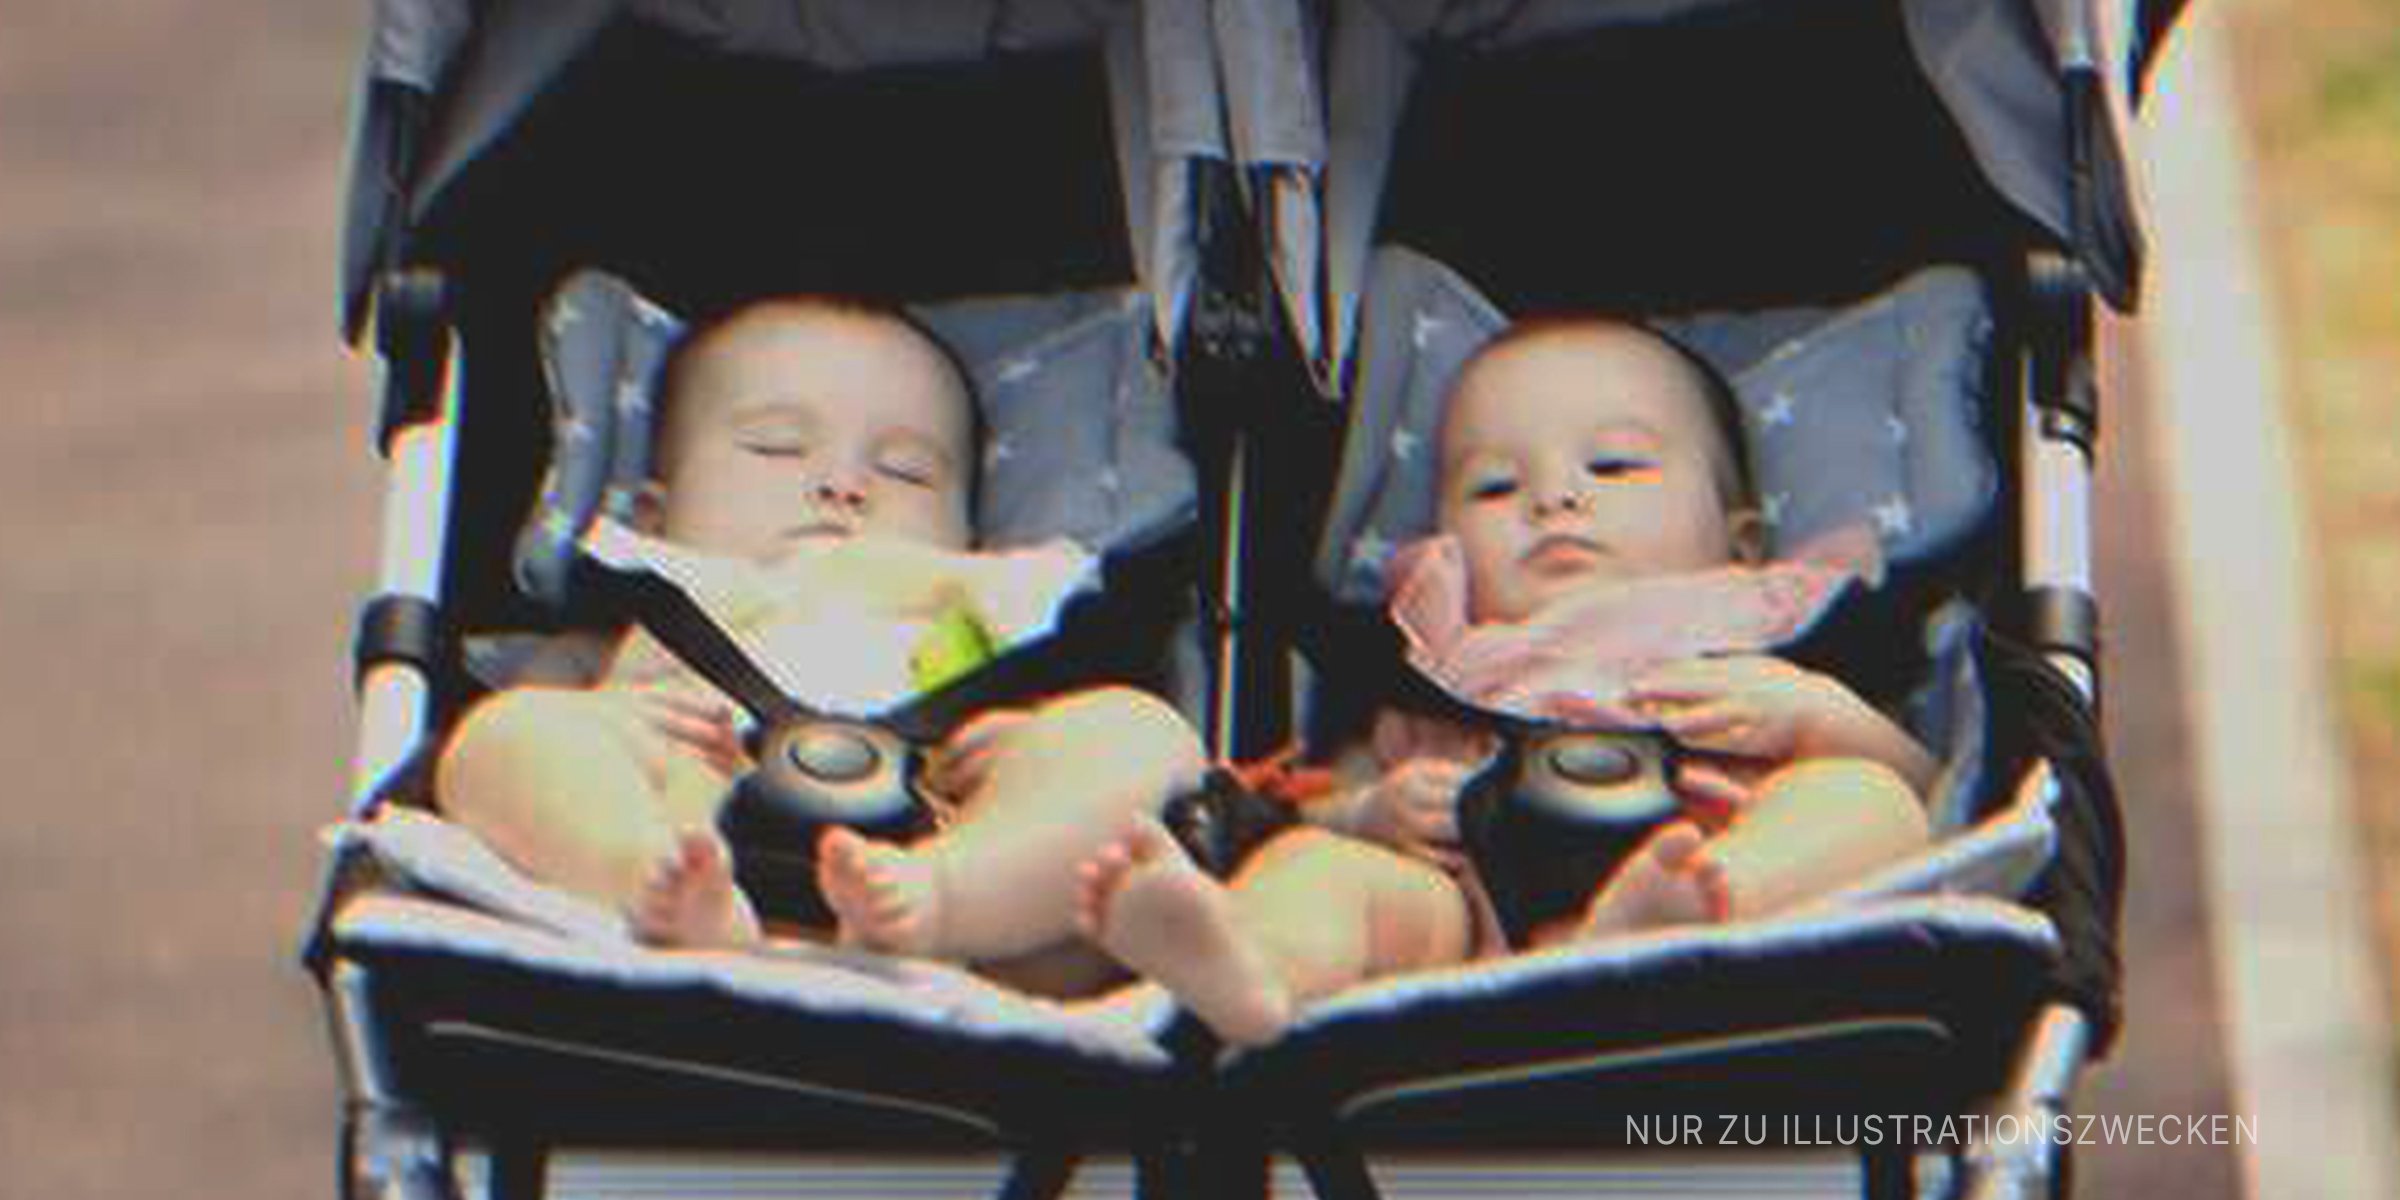 Zwillingsbabys in einem Kinderwagen | Quelle: Shutterstock